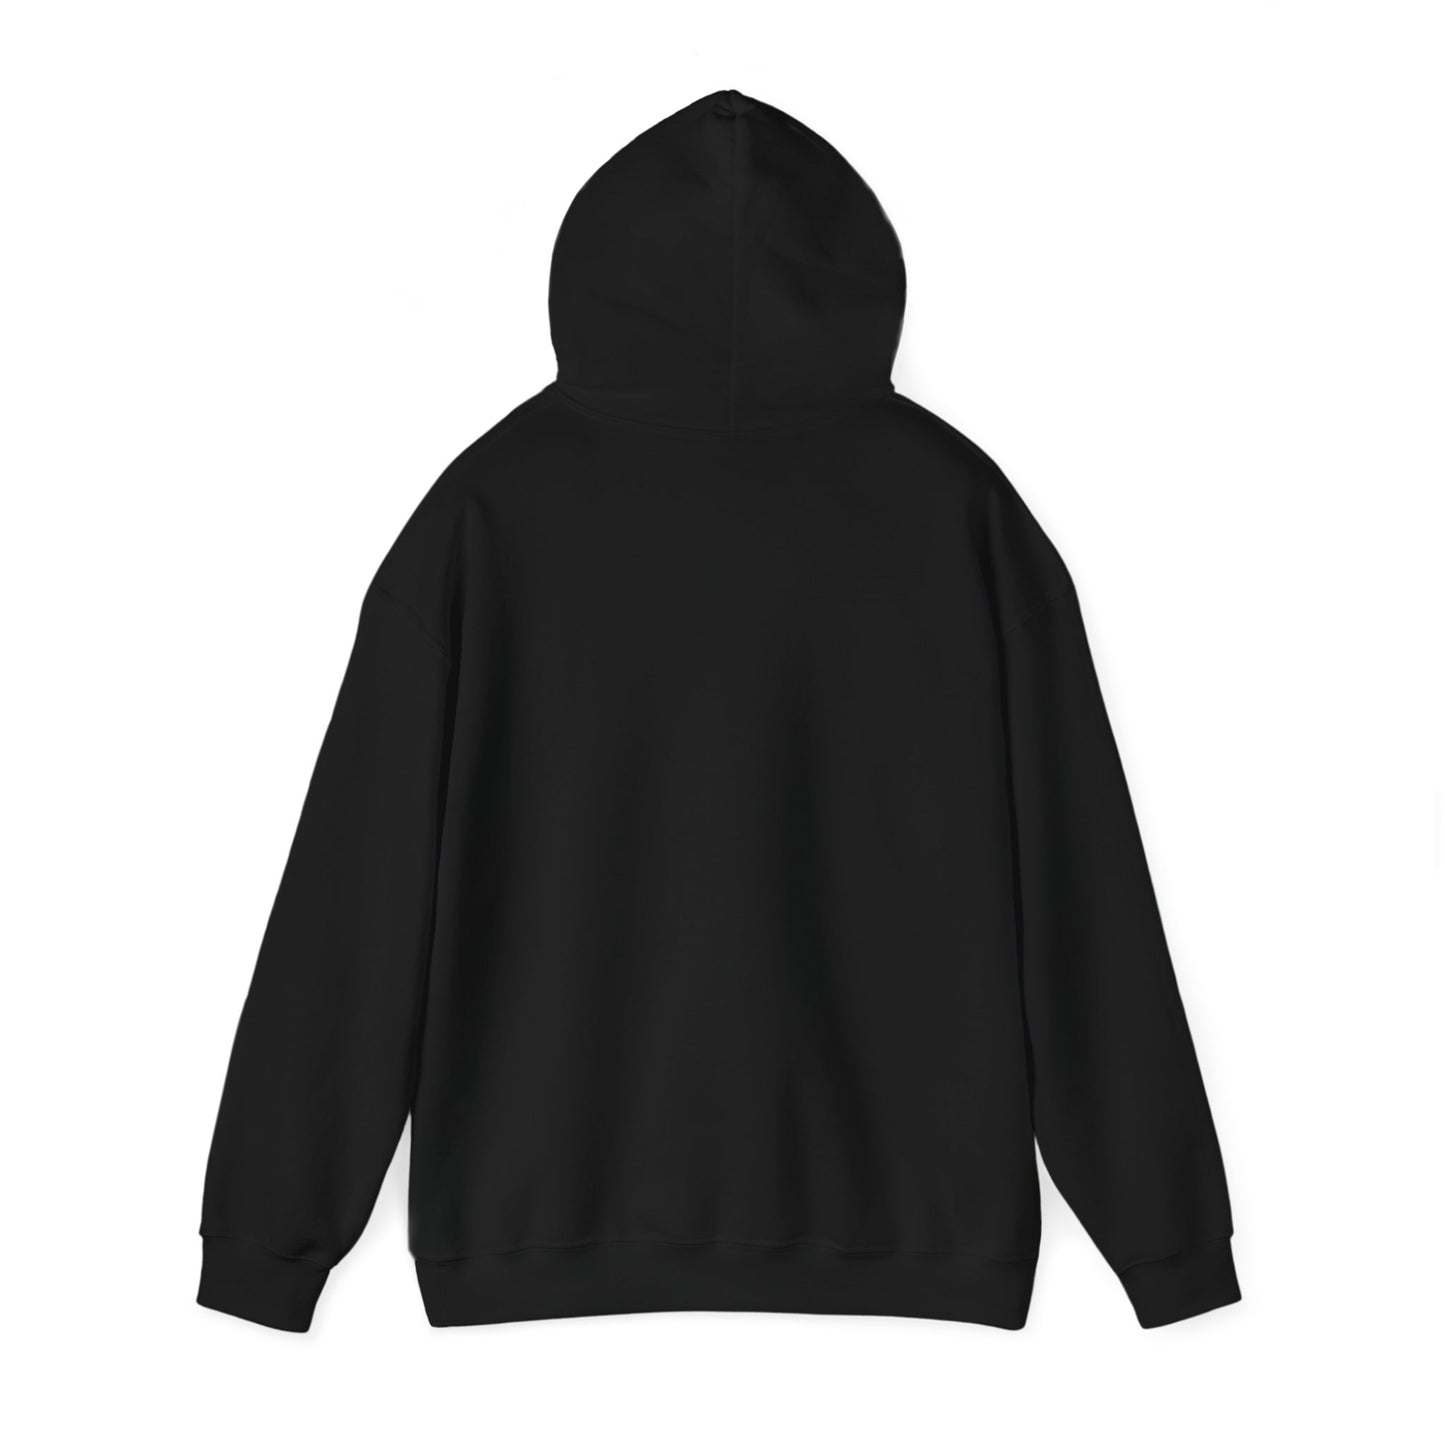 Women's Heavy Blend™ Hooded Sweatshirt